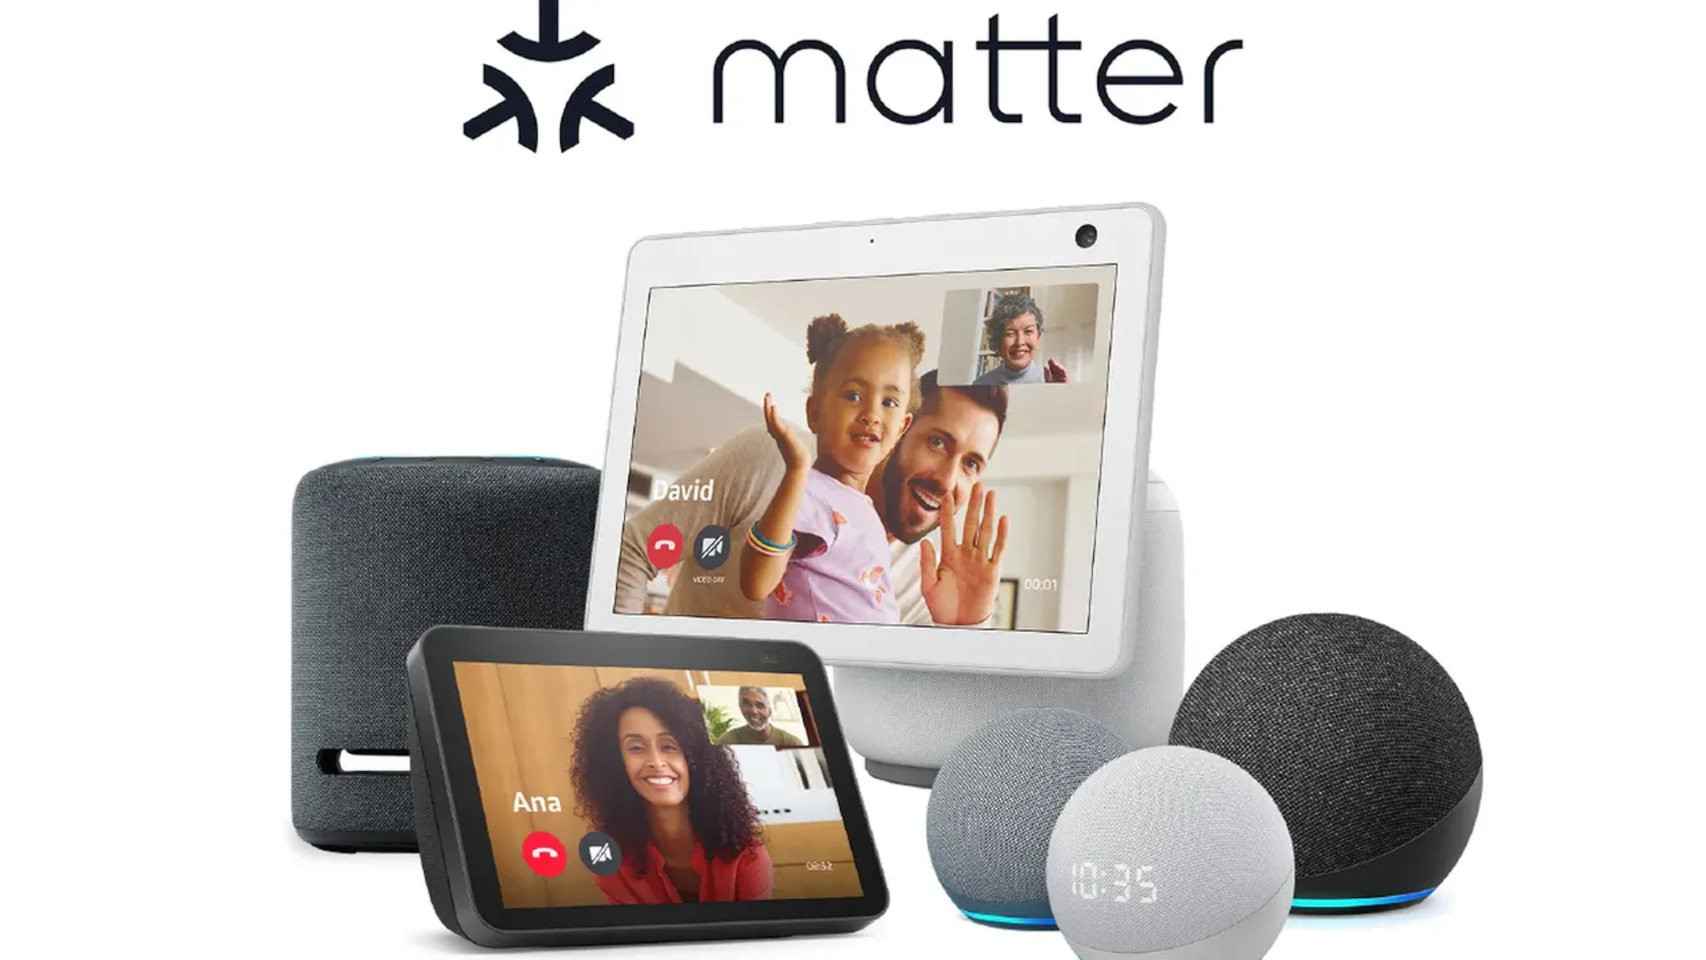 Los dispositivos Amazon Echo serán compatibles con Matter